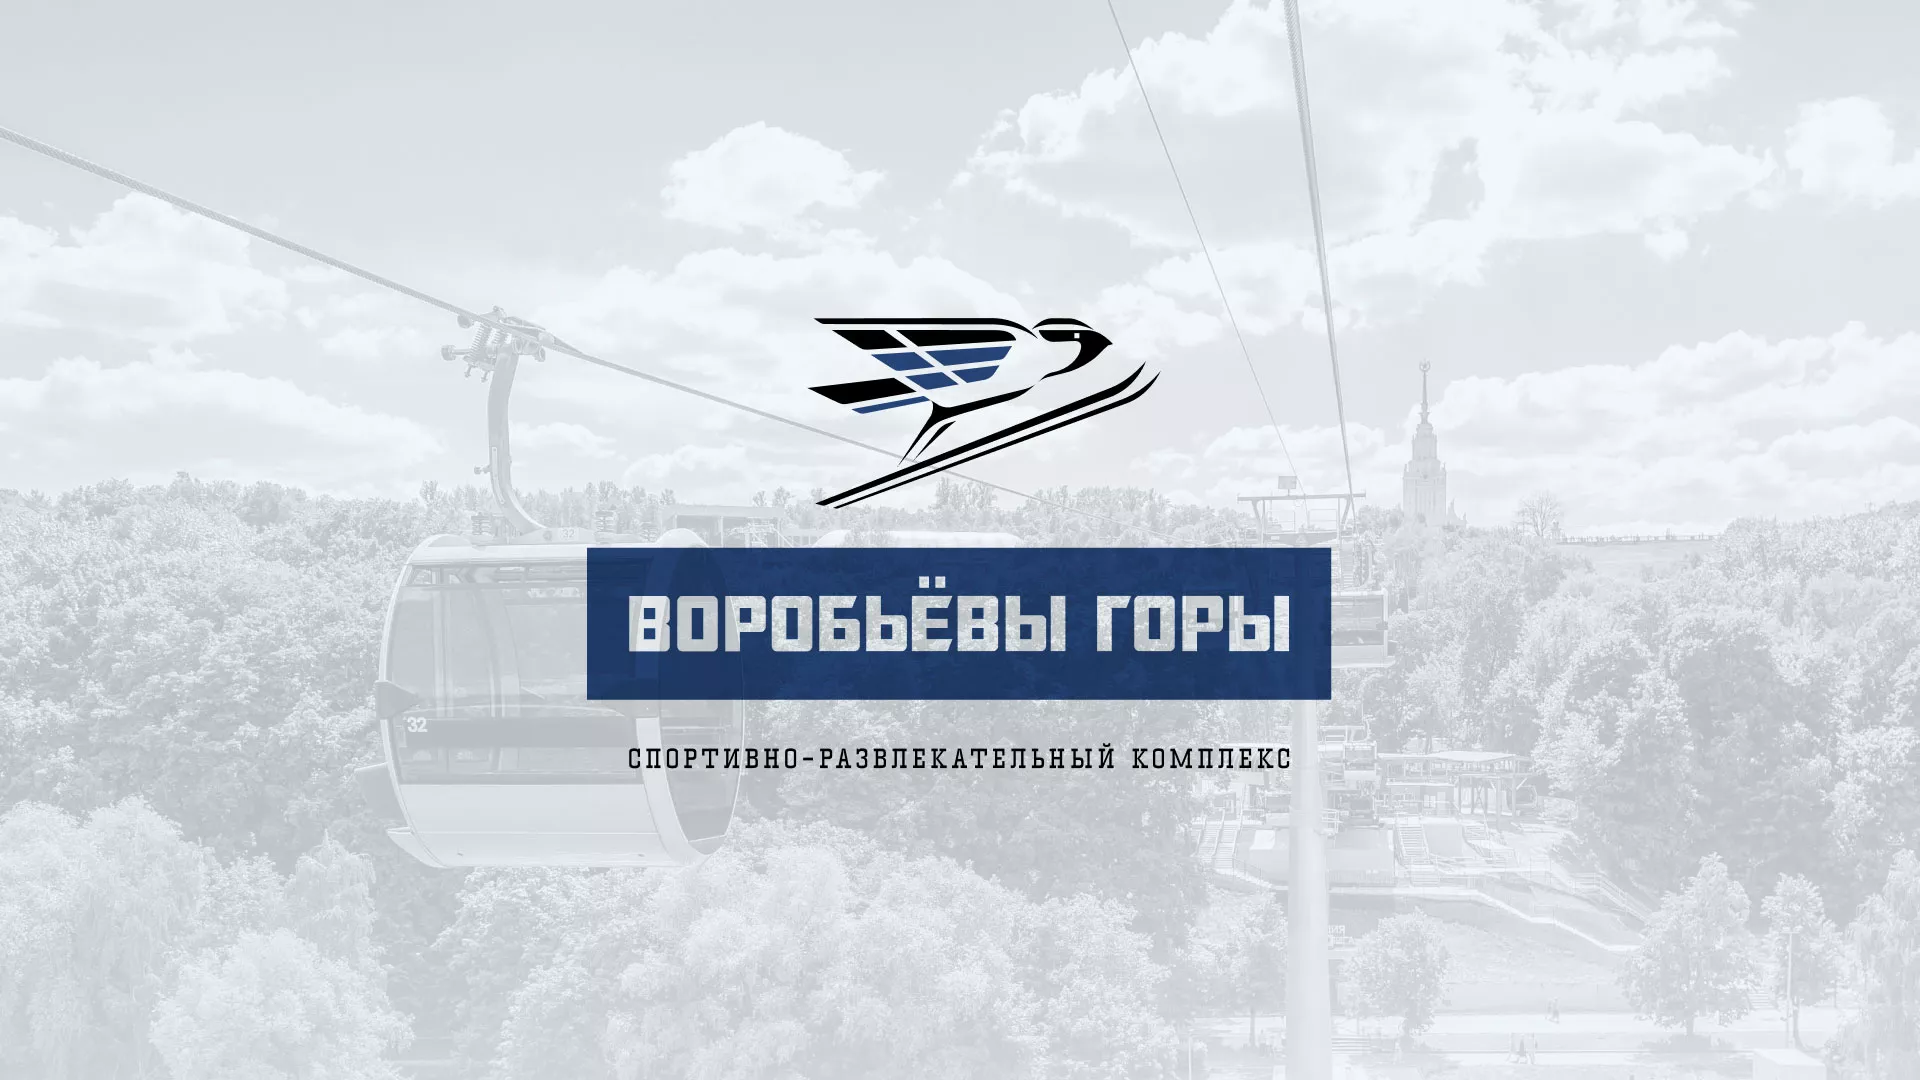 Разработка сайта в Долинске для спортивно-развлекательного комплекса «Воробьёвы горы»